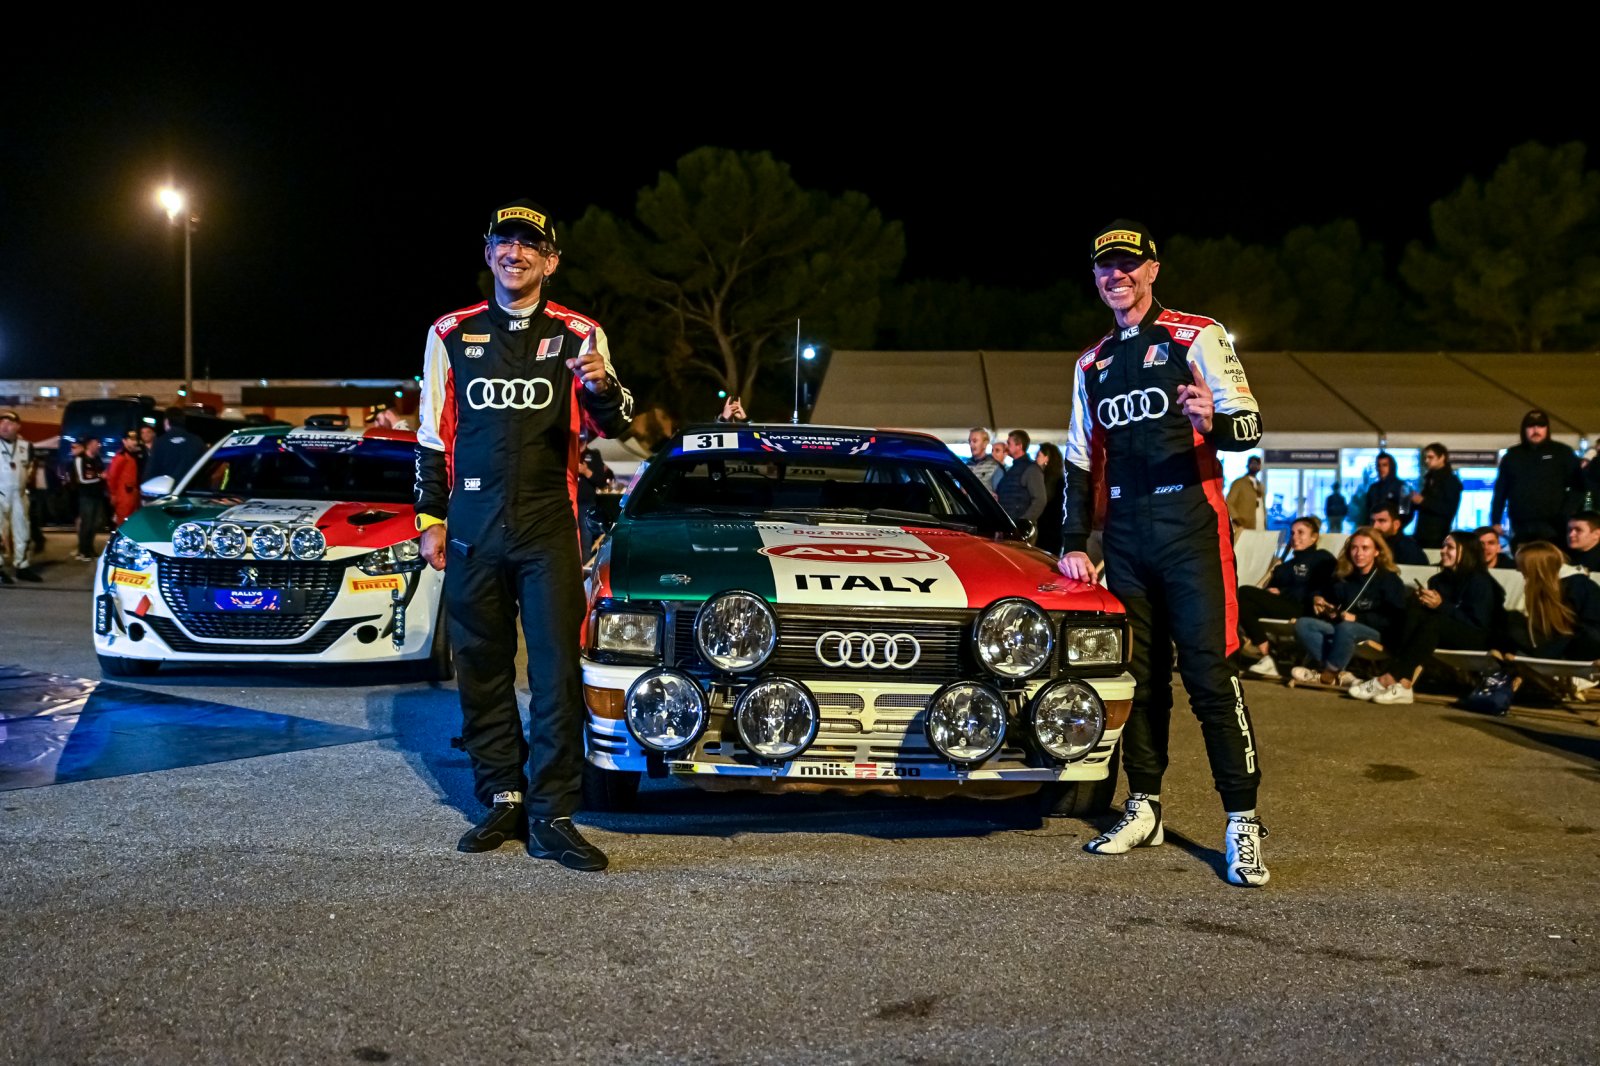 #31 - Italy - Zippo - Nicola Arena -  Audi quattro, Historic Rally
